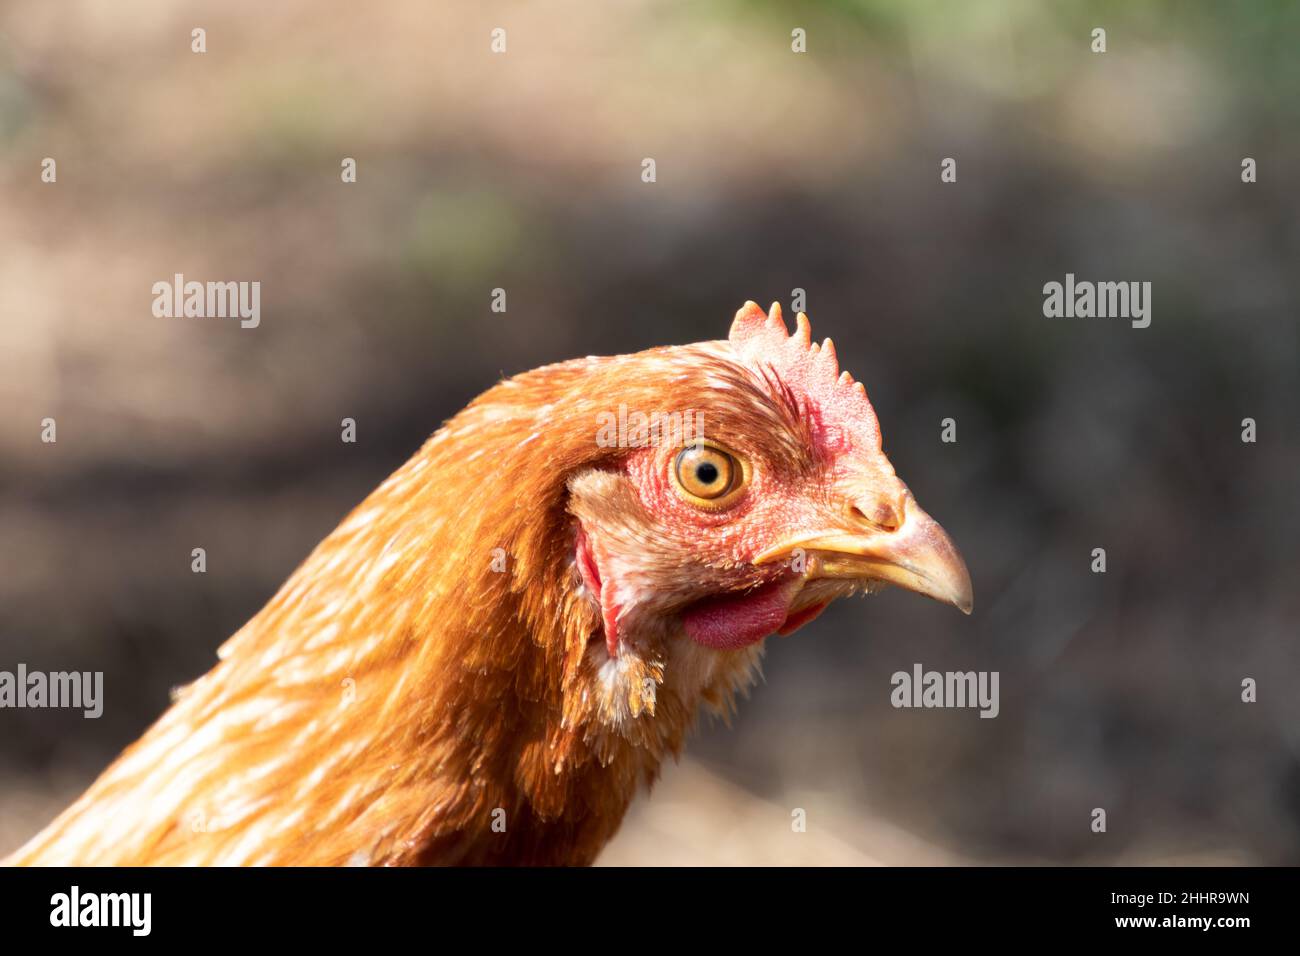 Hühnerzucht Hühnerausstellung Pokale Plakette mit Relief Hahn & Hennen 